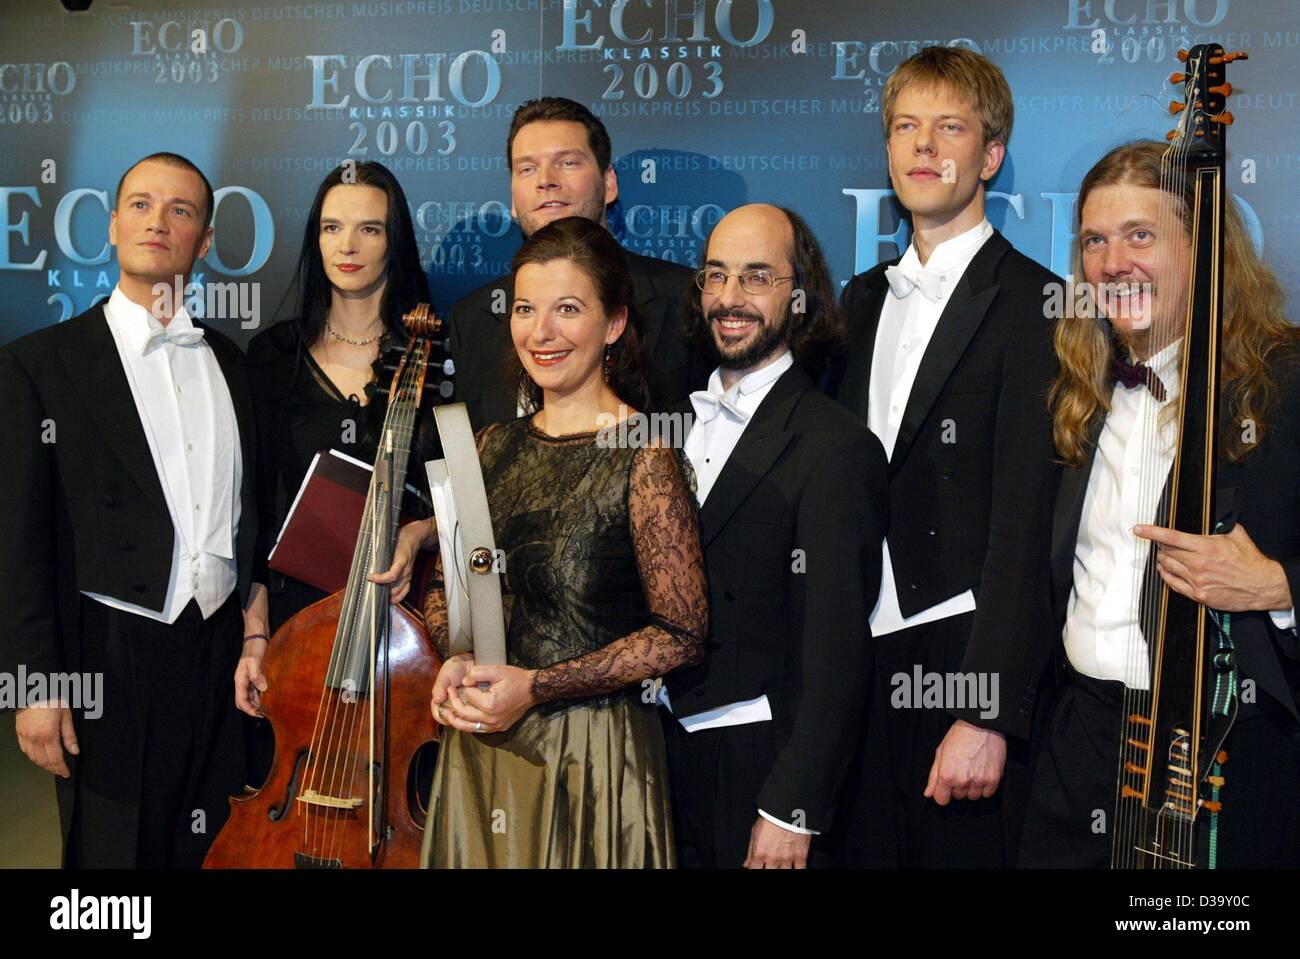 Les membres de l'ensemble Orlando di Lasso pose avec leur 'echo' award lors de la cérémonie de remise des prix classique d'Echo à Dortmund, en Allemagne, le 26 octobre 2003. Banque D'Images